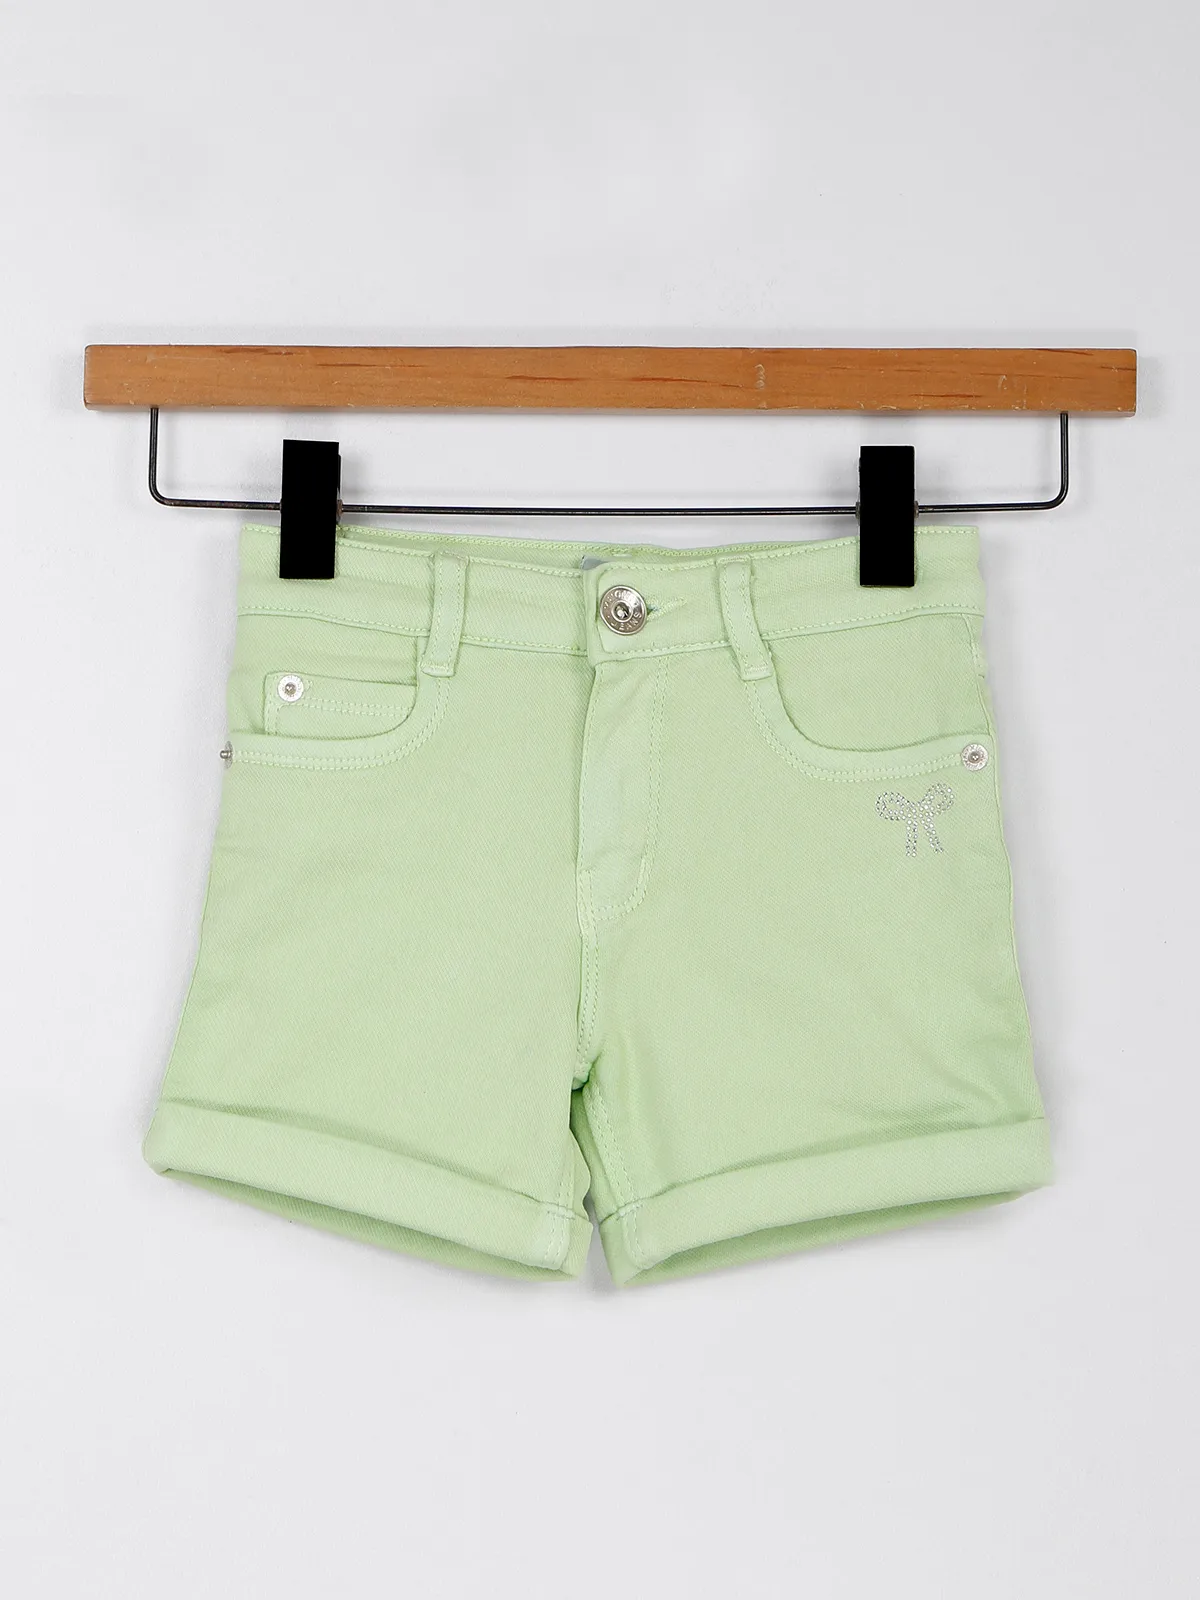 Trendy pista green denim shorts for girls